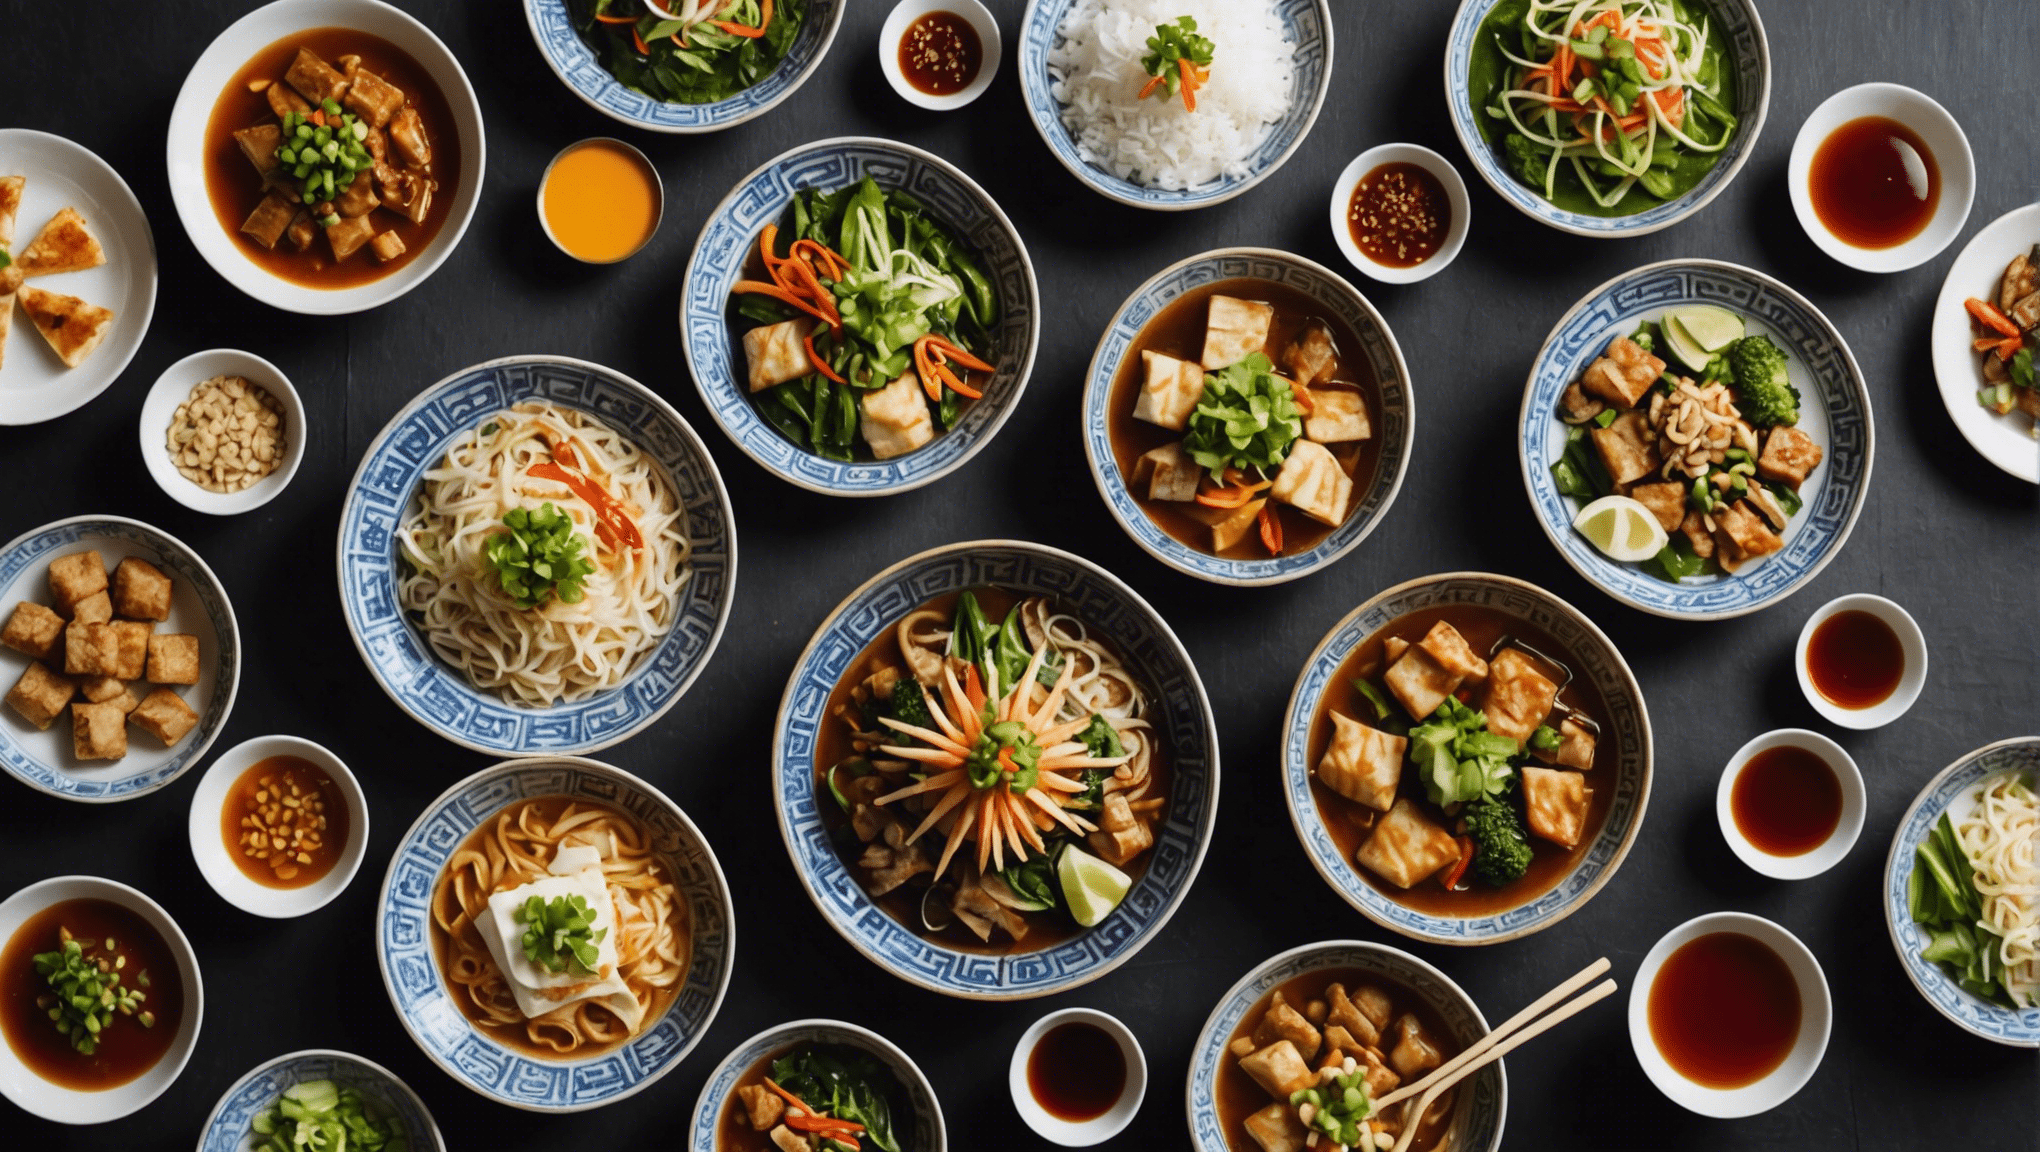 découvrez les délices de la gastronomie asiatique lors d'un voyage culinaire en asie et laissez-vous emporter par une explosion de saveurs exotiques et raffinées.